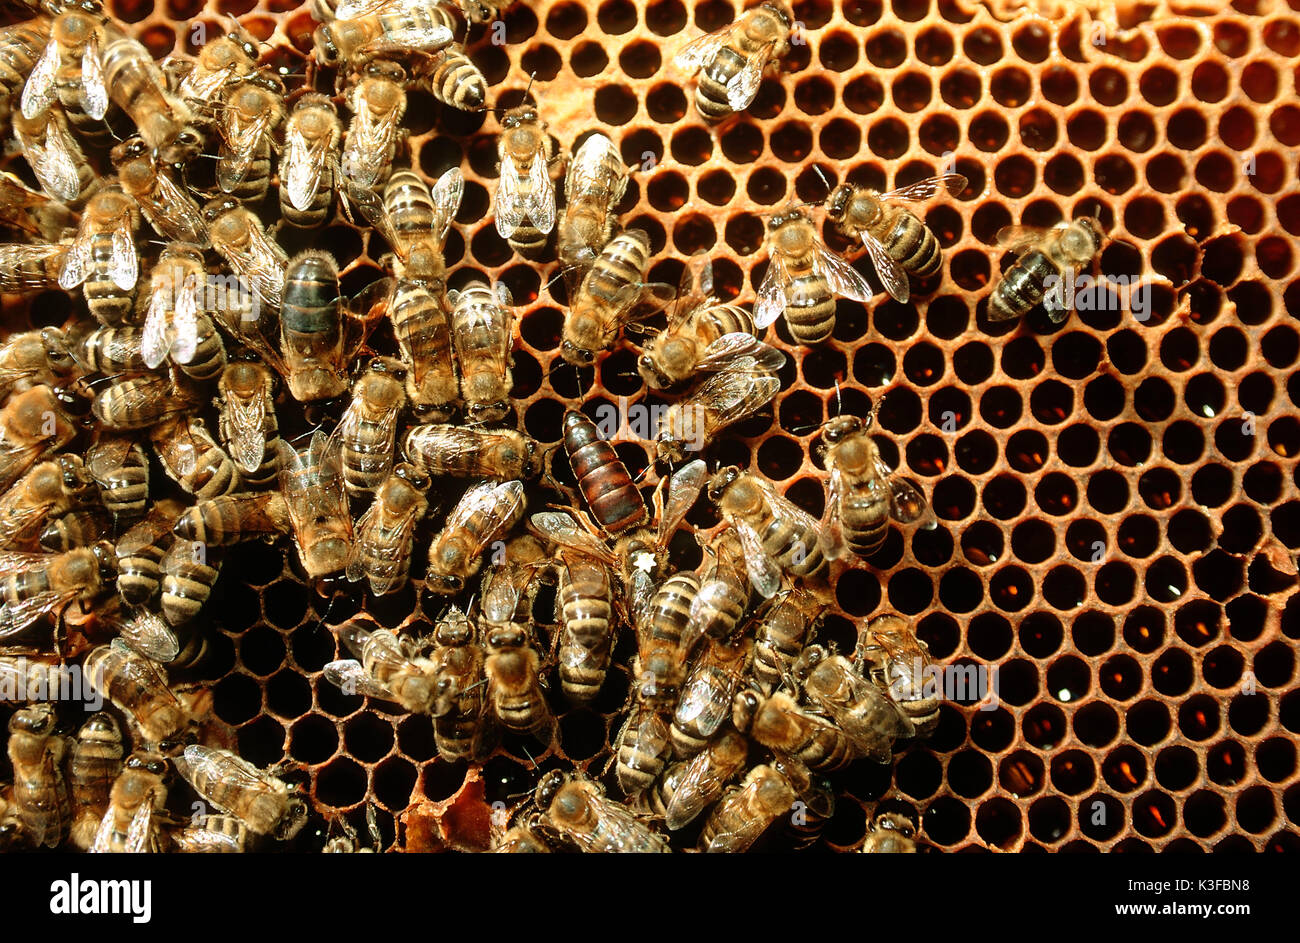 Der Biene Belastung mit Königin (Ausgewählter mit White Star) auf einer Wabe Stockfoto